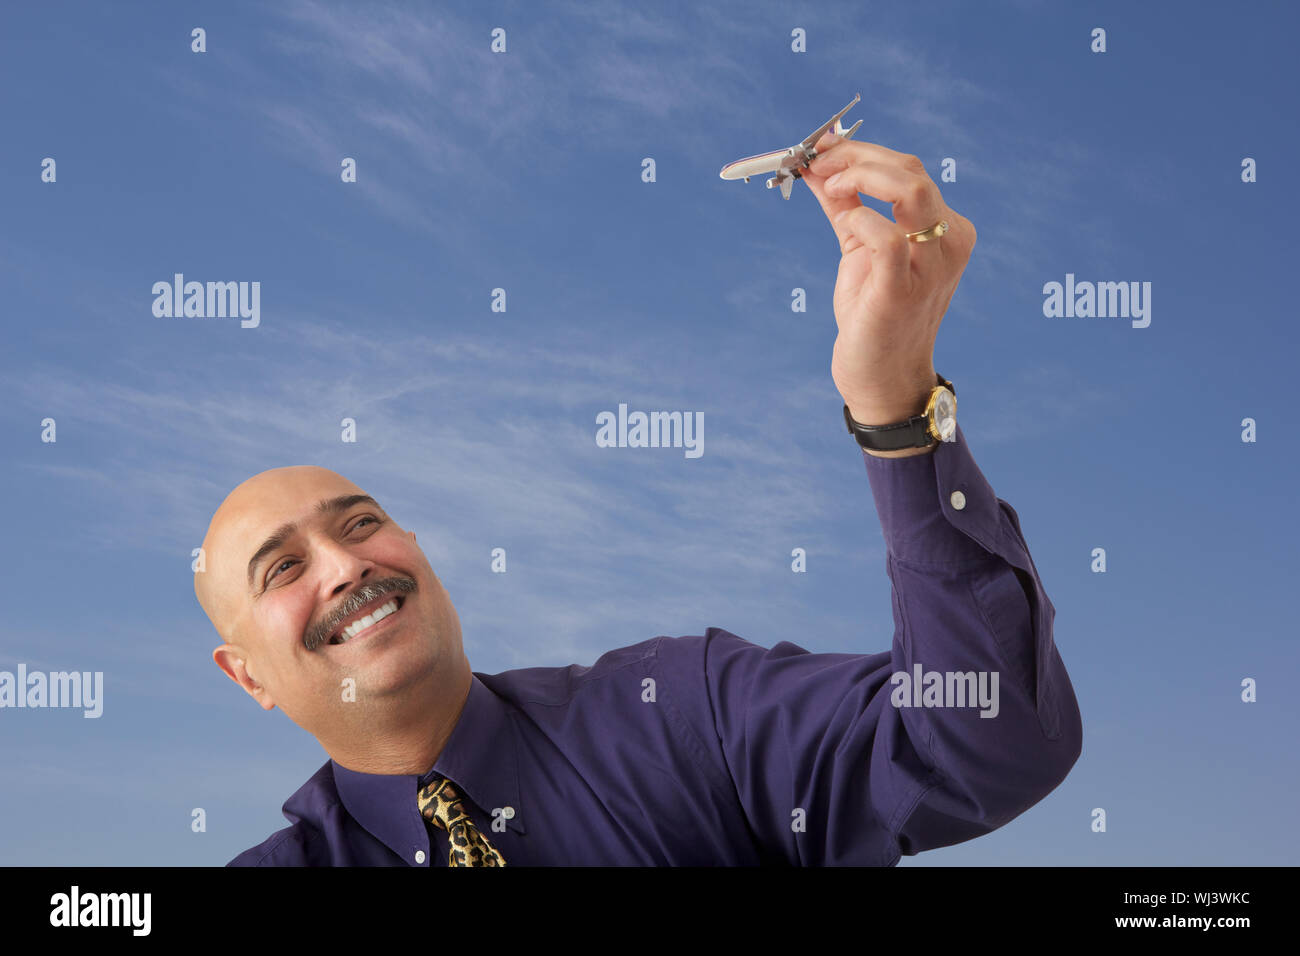 Hombre de negocios jugando con el avión modelo y sonriendo Foto de stock